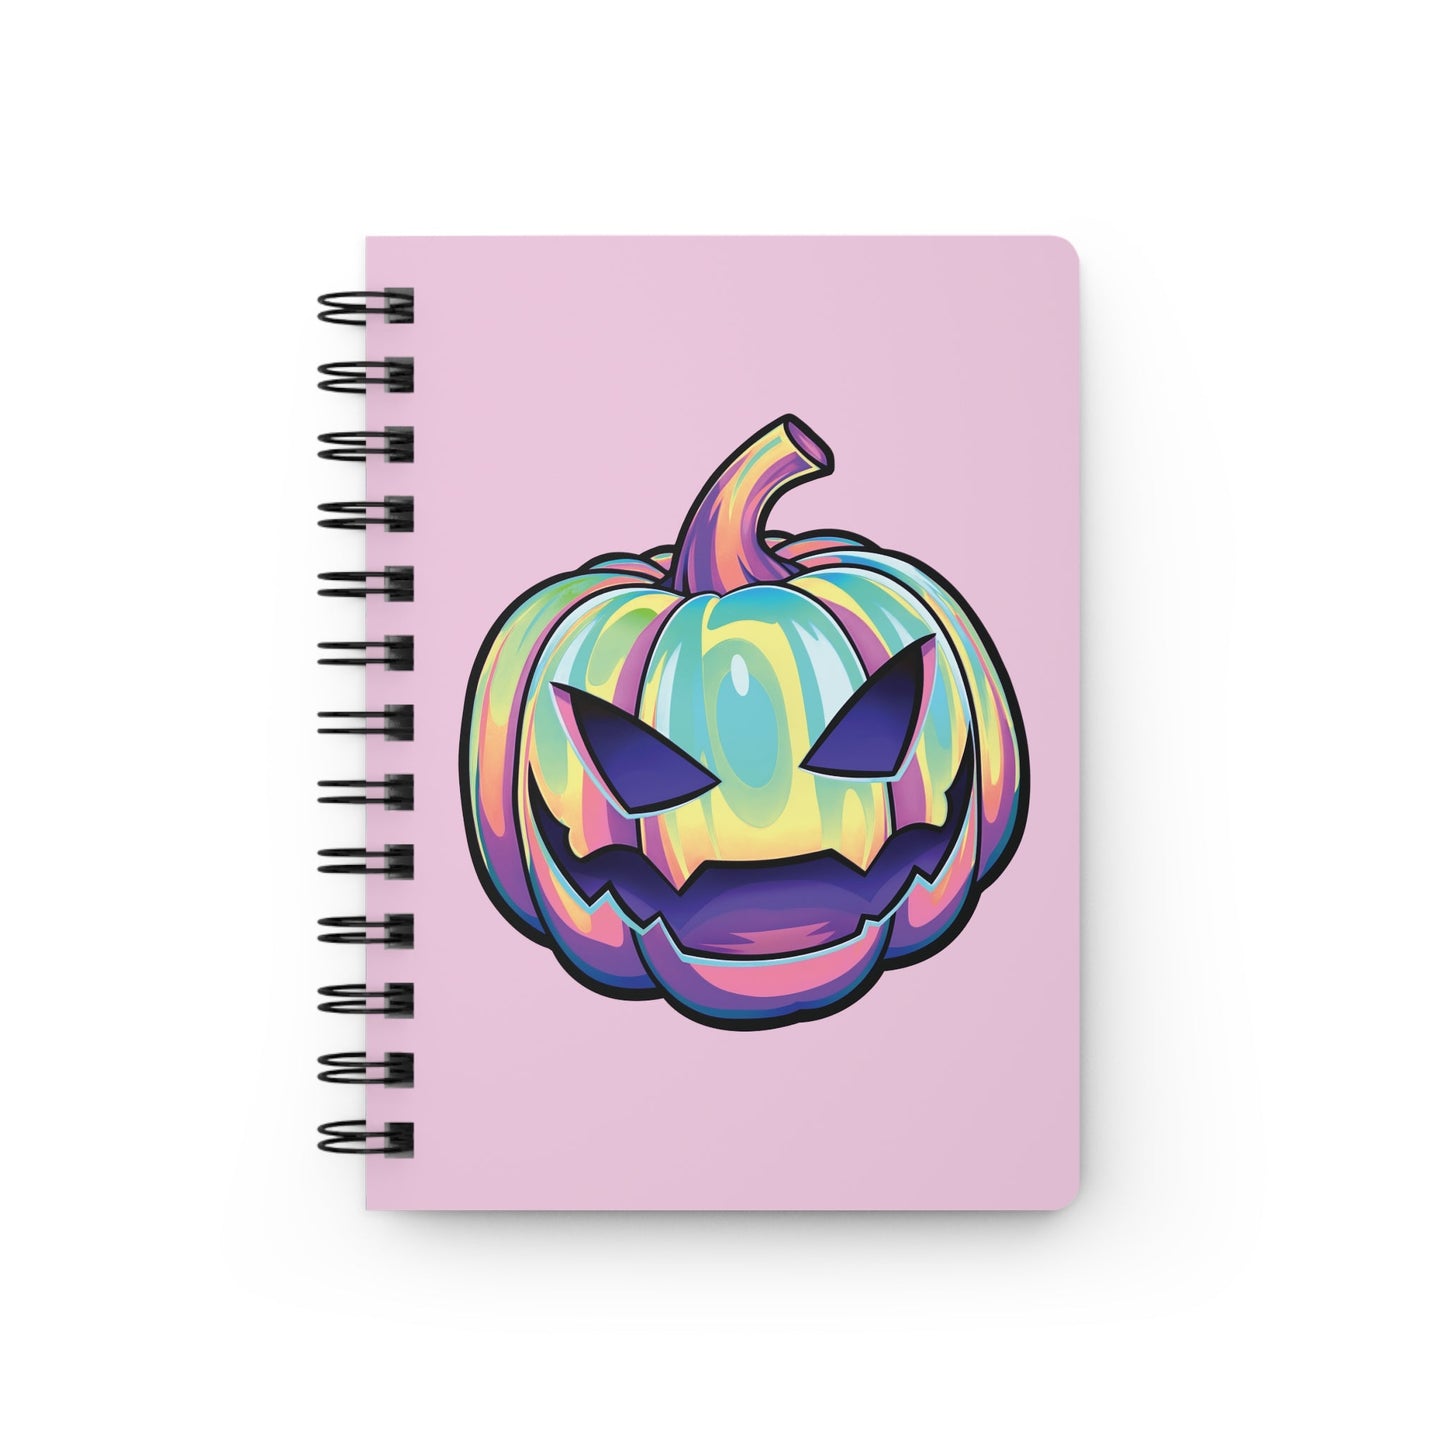 Joke-o'-Lantern Spiral Bound Journal - Pink - Driftless Enchantments